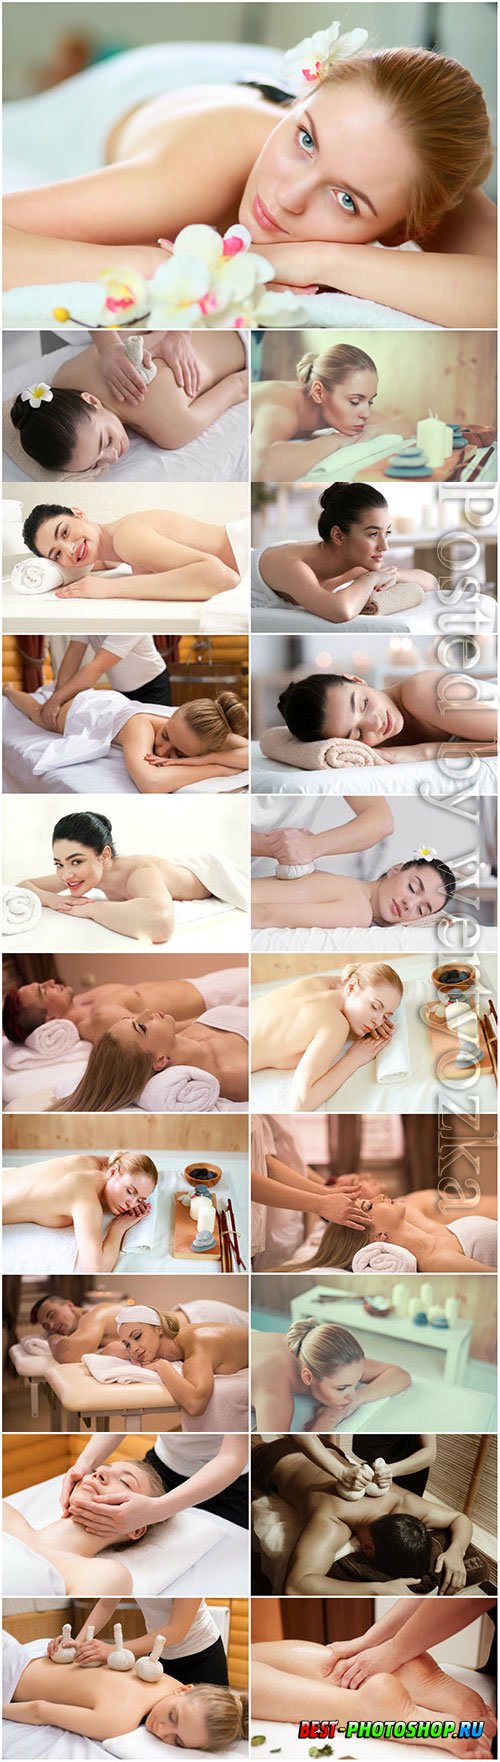 Massage for beautiful girls stock photo